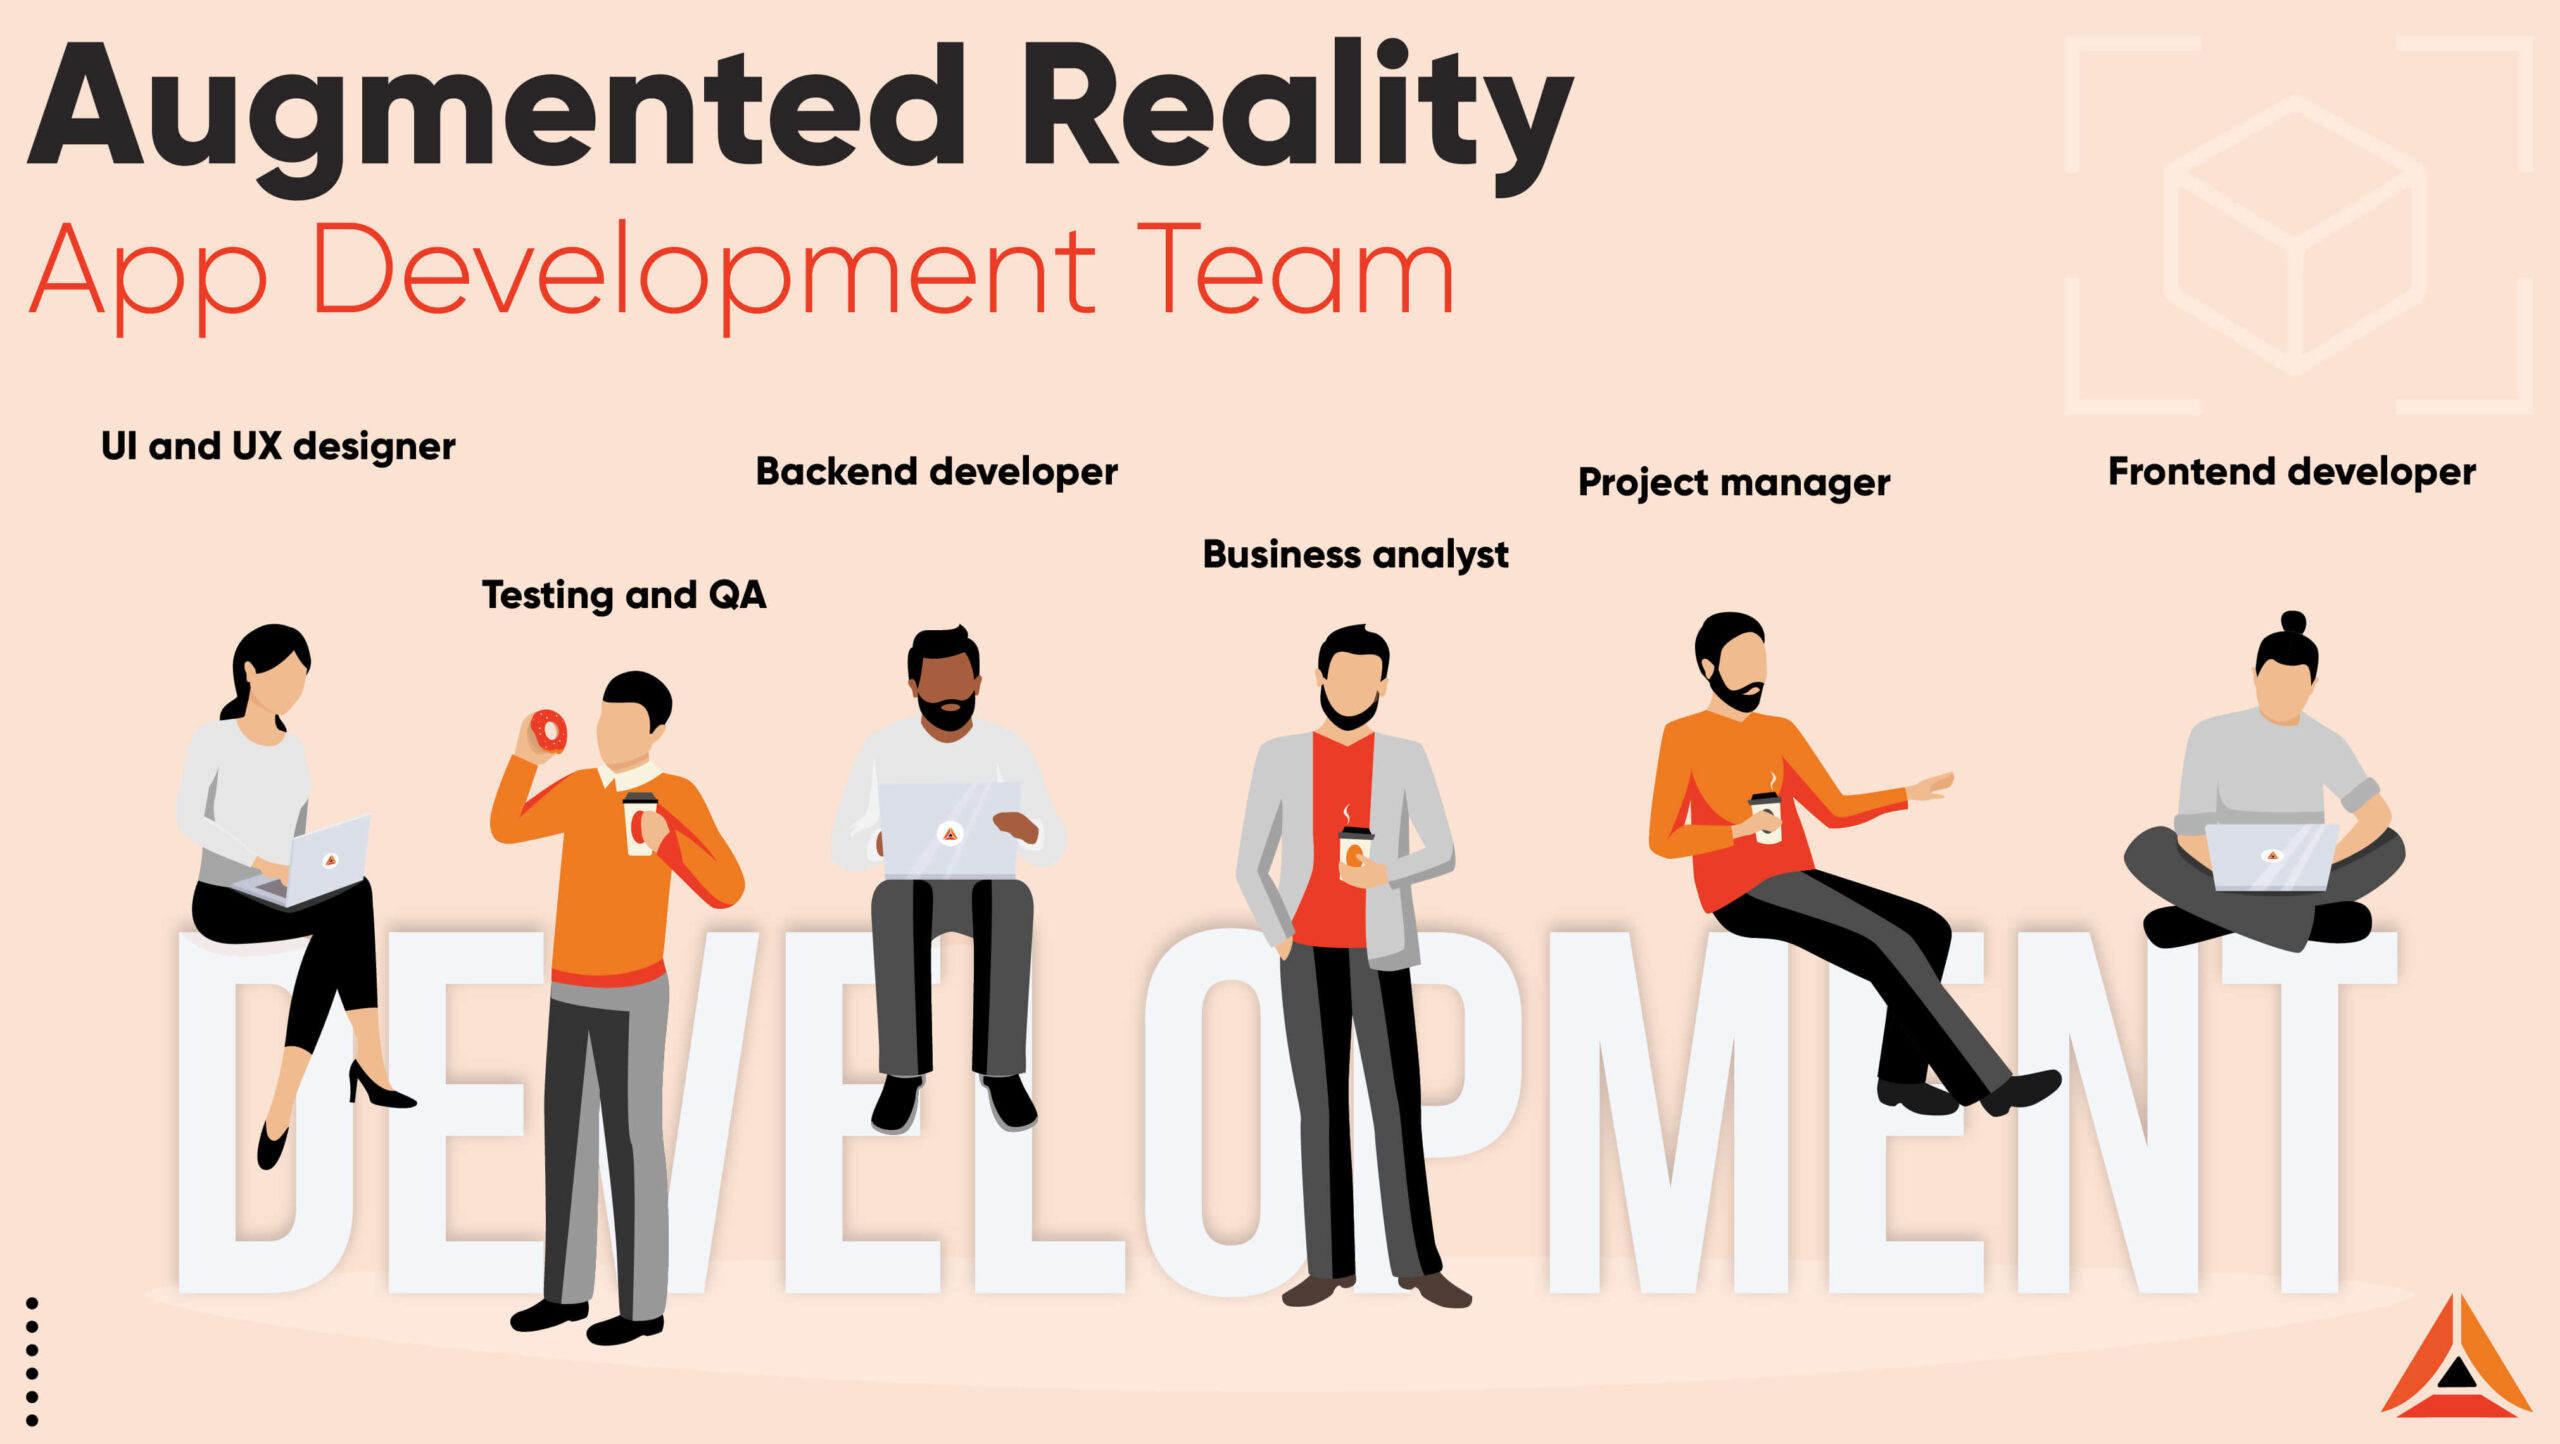 team of AR app developers - tekrevol